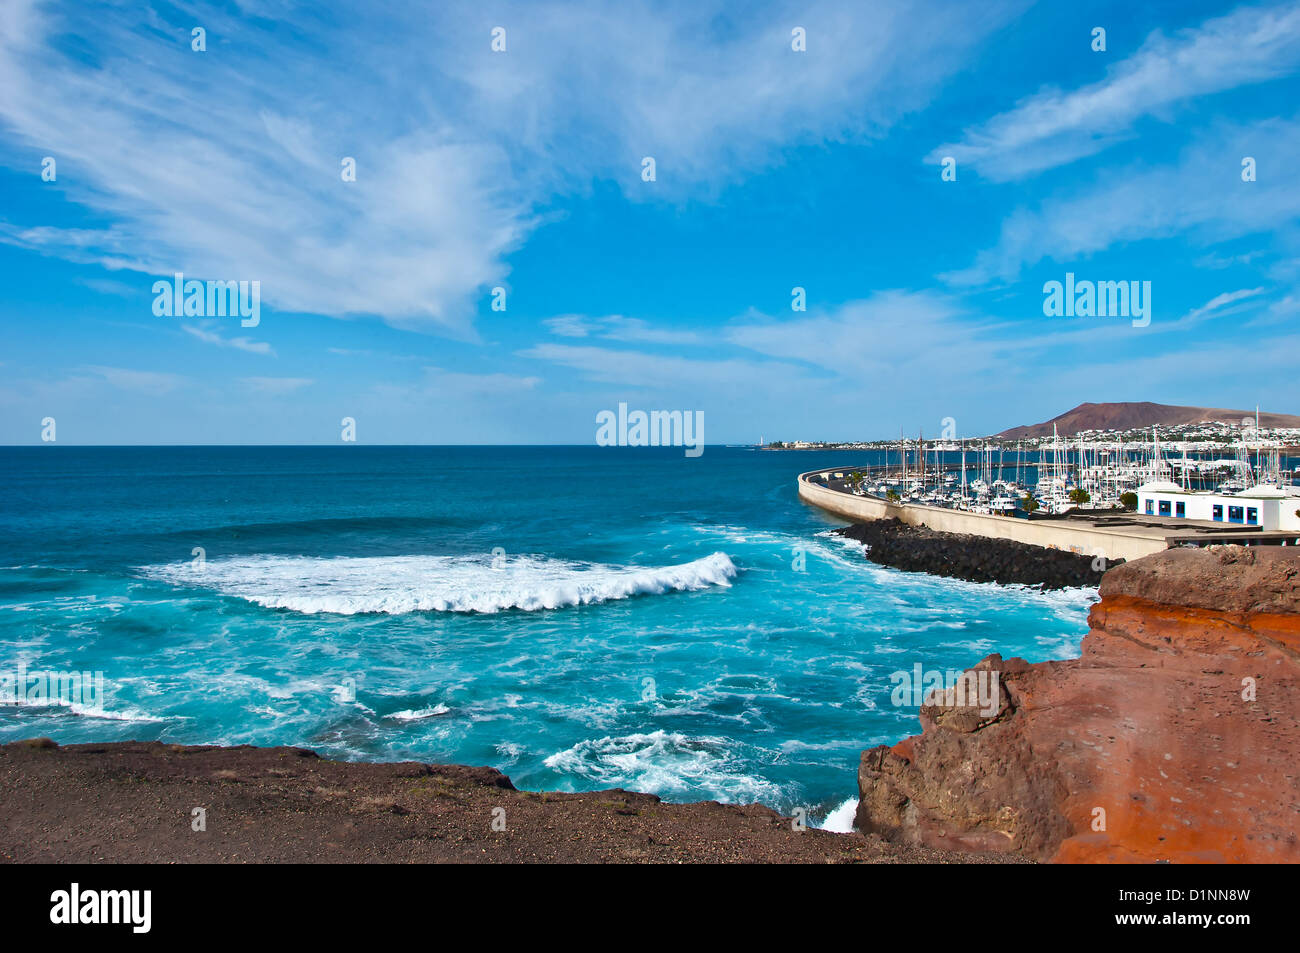 El Atlántico rompiendo en la costa cerca de Playa Blanca, Lanzarote, bajo un cielo de invierno azul con nubes cirrus Foto de stock